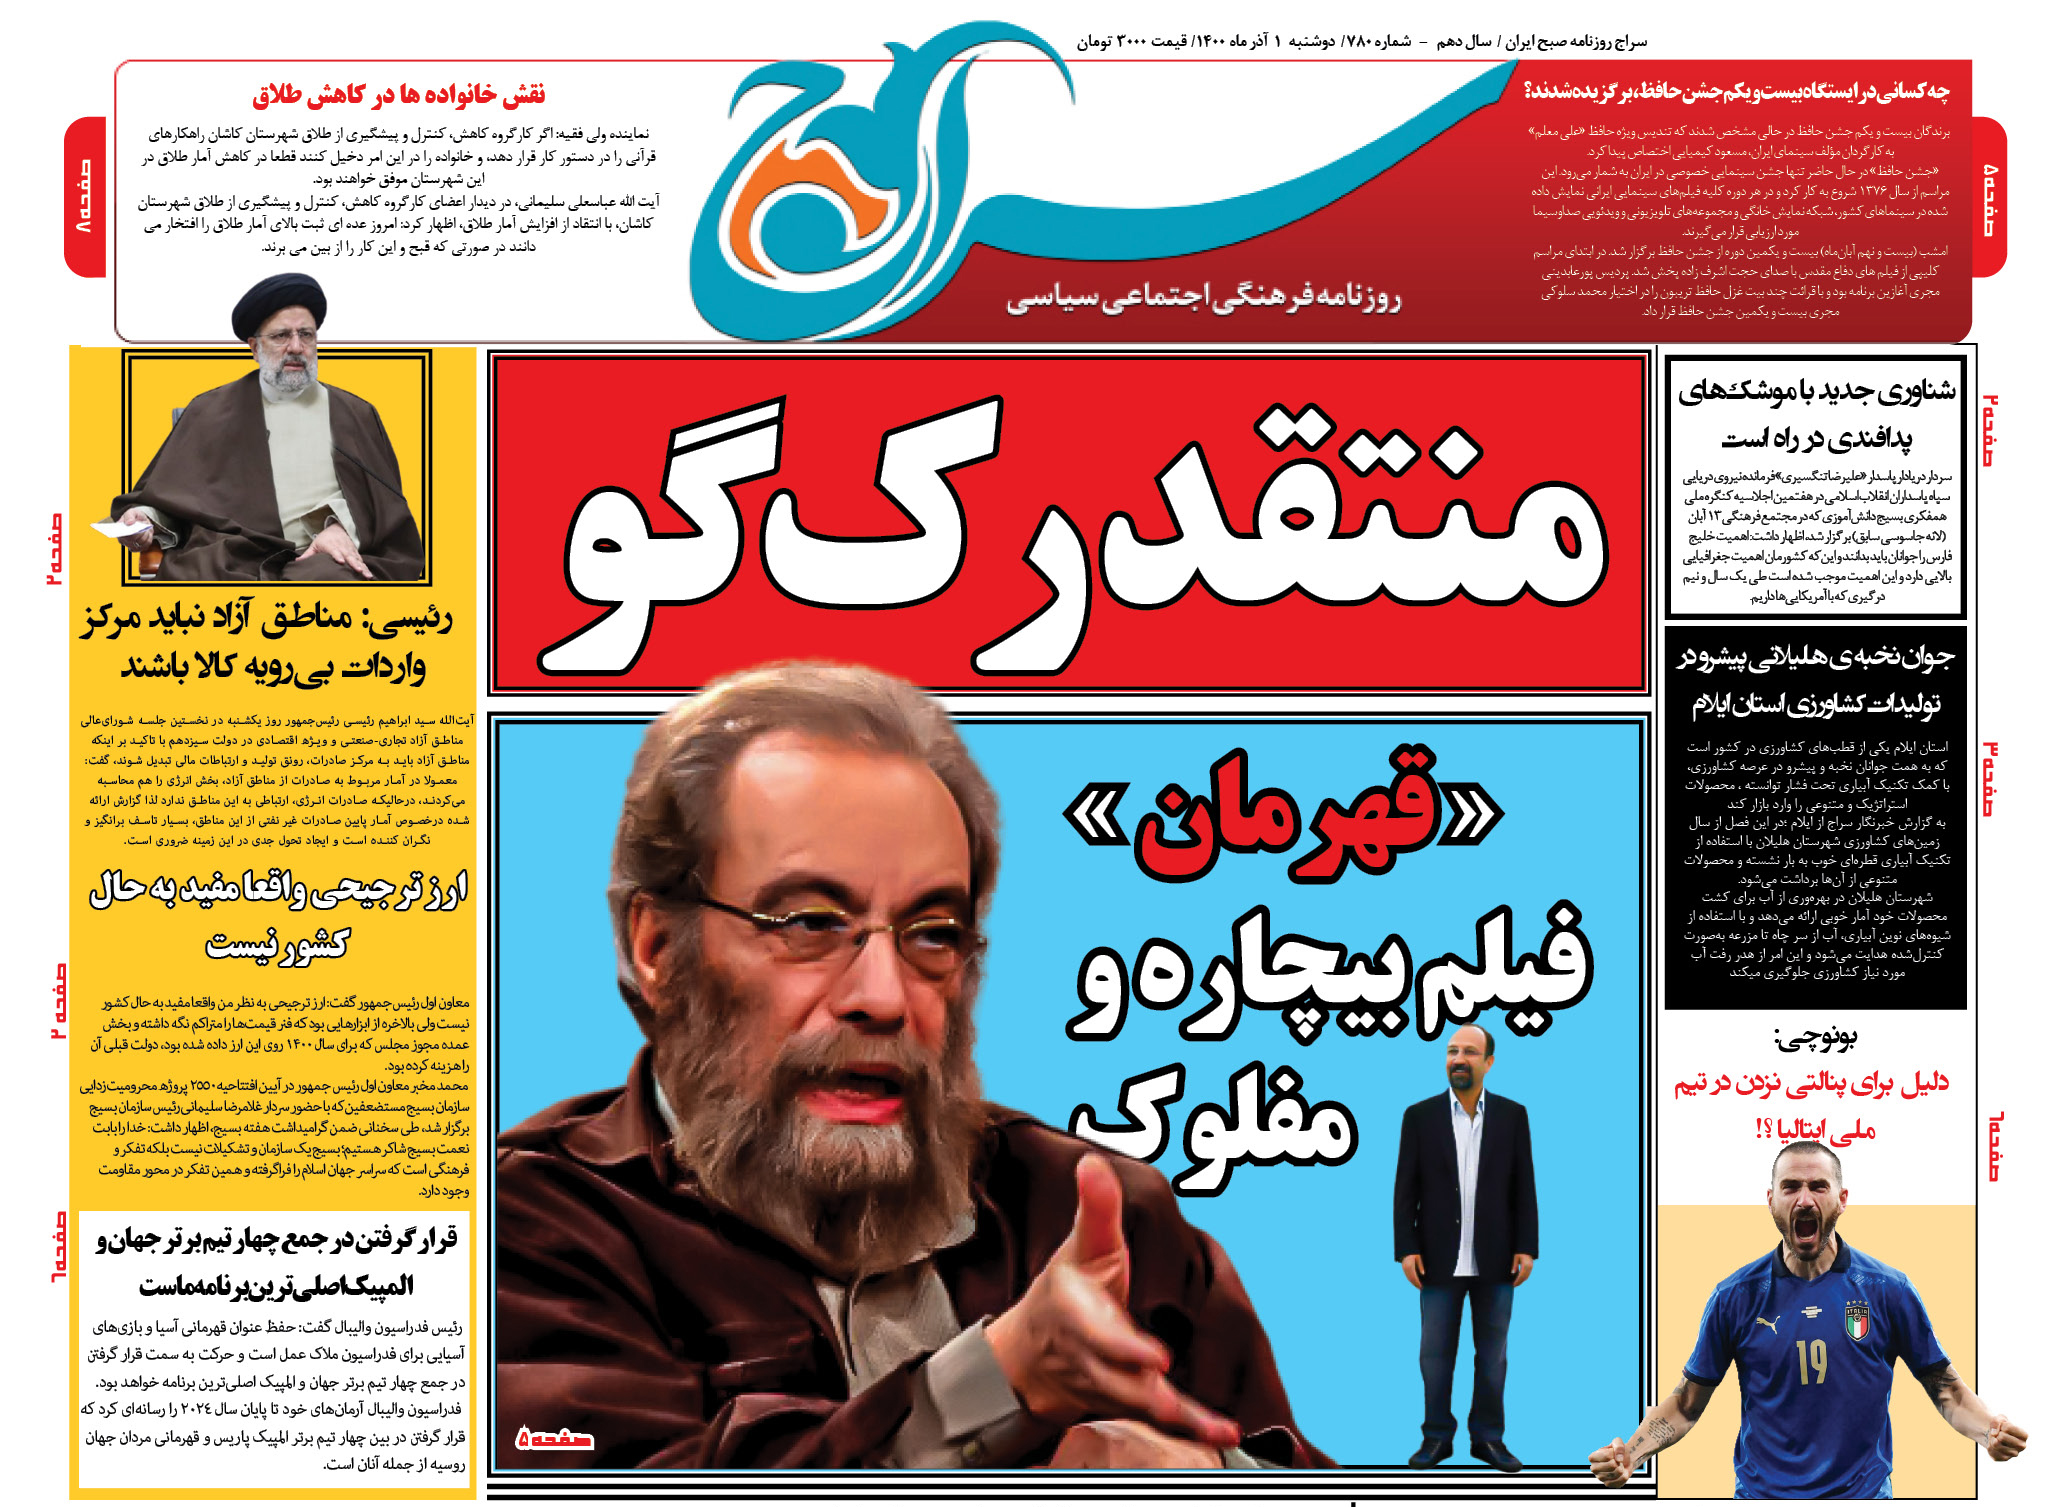 تصویر صفحه نخست روزنامه سراج/فراستی منتقدی رک گو است که گفته فیلم قهرمان اصغر فرهادی بیچاره و مفلوک است